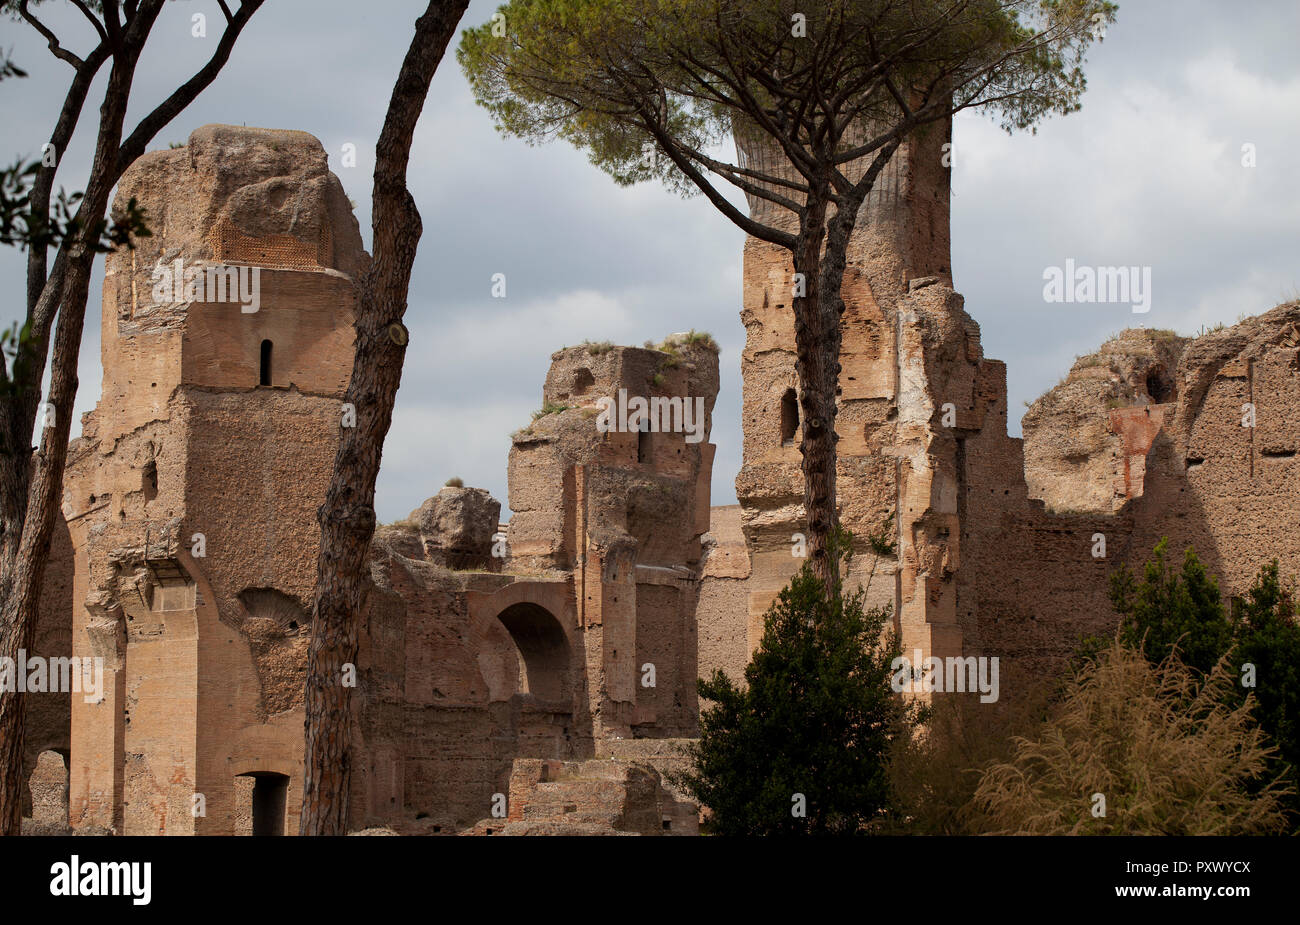 Parte delle rovine delle Terme di Caracalla, mostrando il massiccio antica, mattone mura romane e alcuni dei pini che circondano il sito. Foto Stock